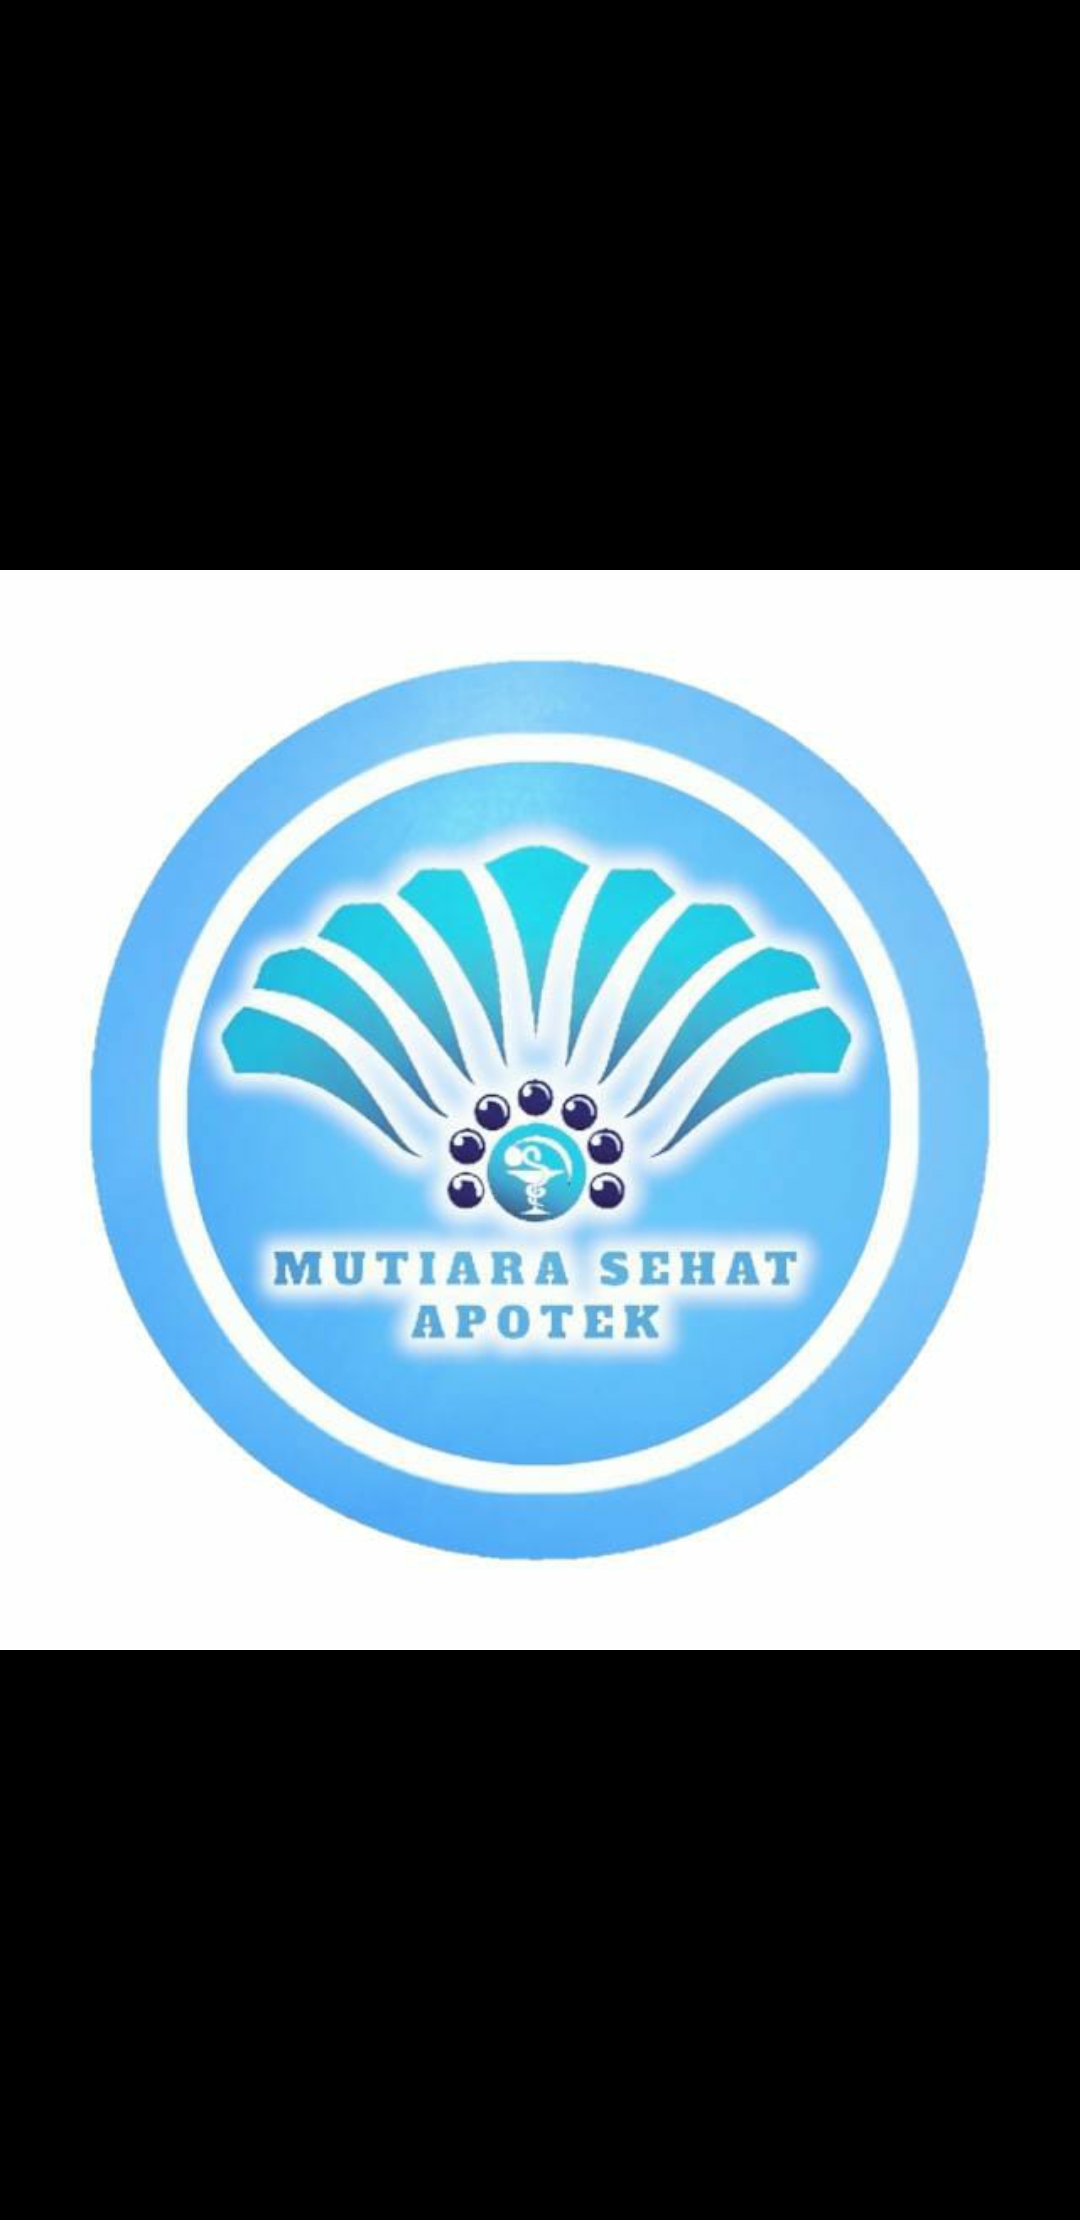 Apotek Mutiara Sehat